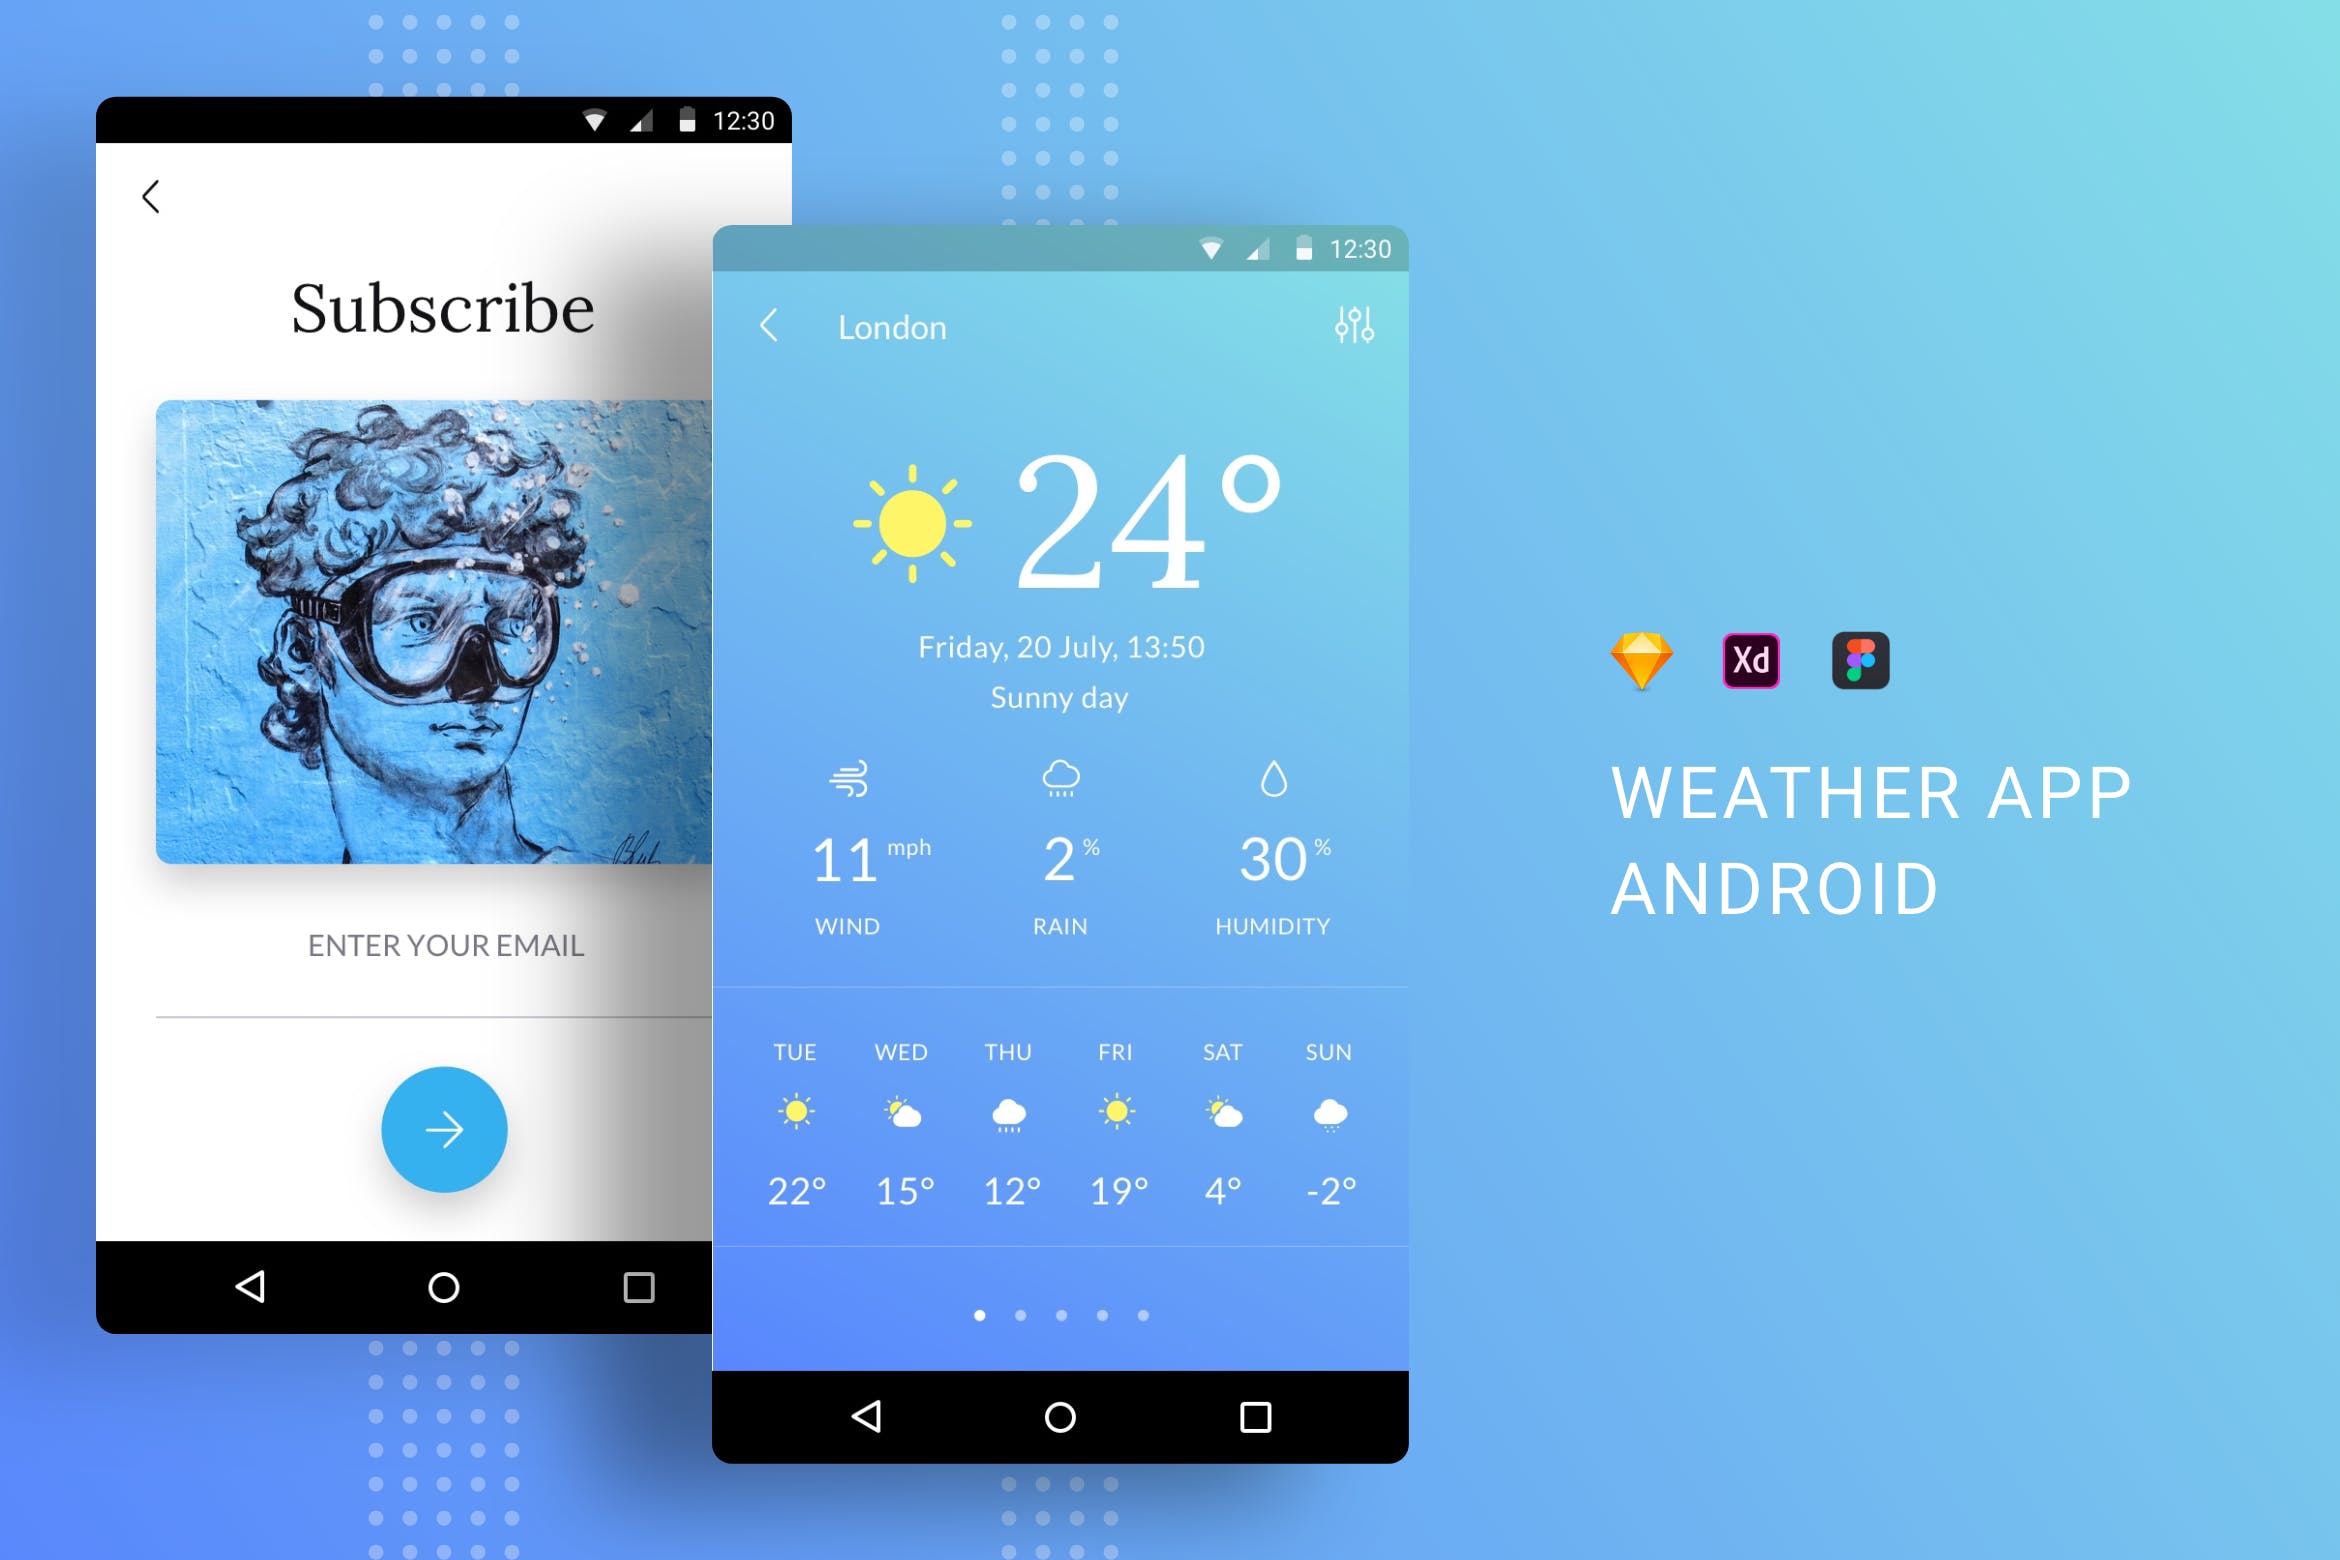 天气预报APP应用界面设计蚂蚁素材精选模板 Weather App UI Kit Android插图